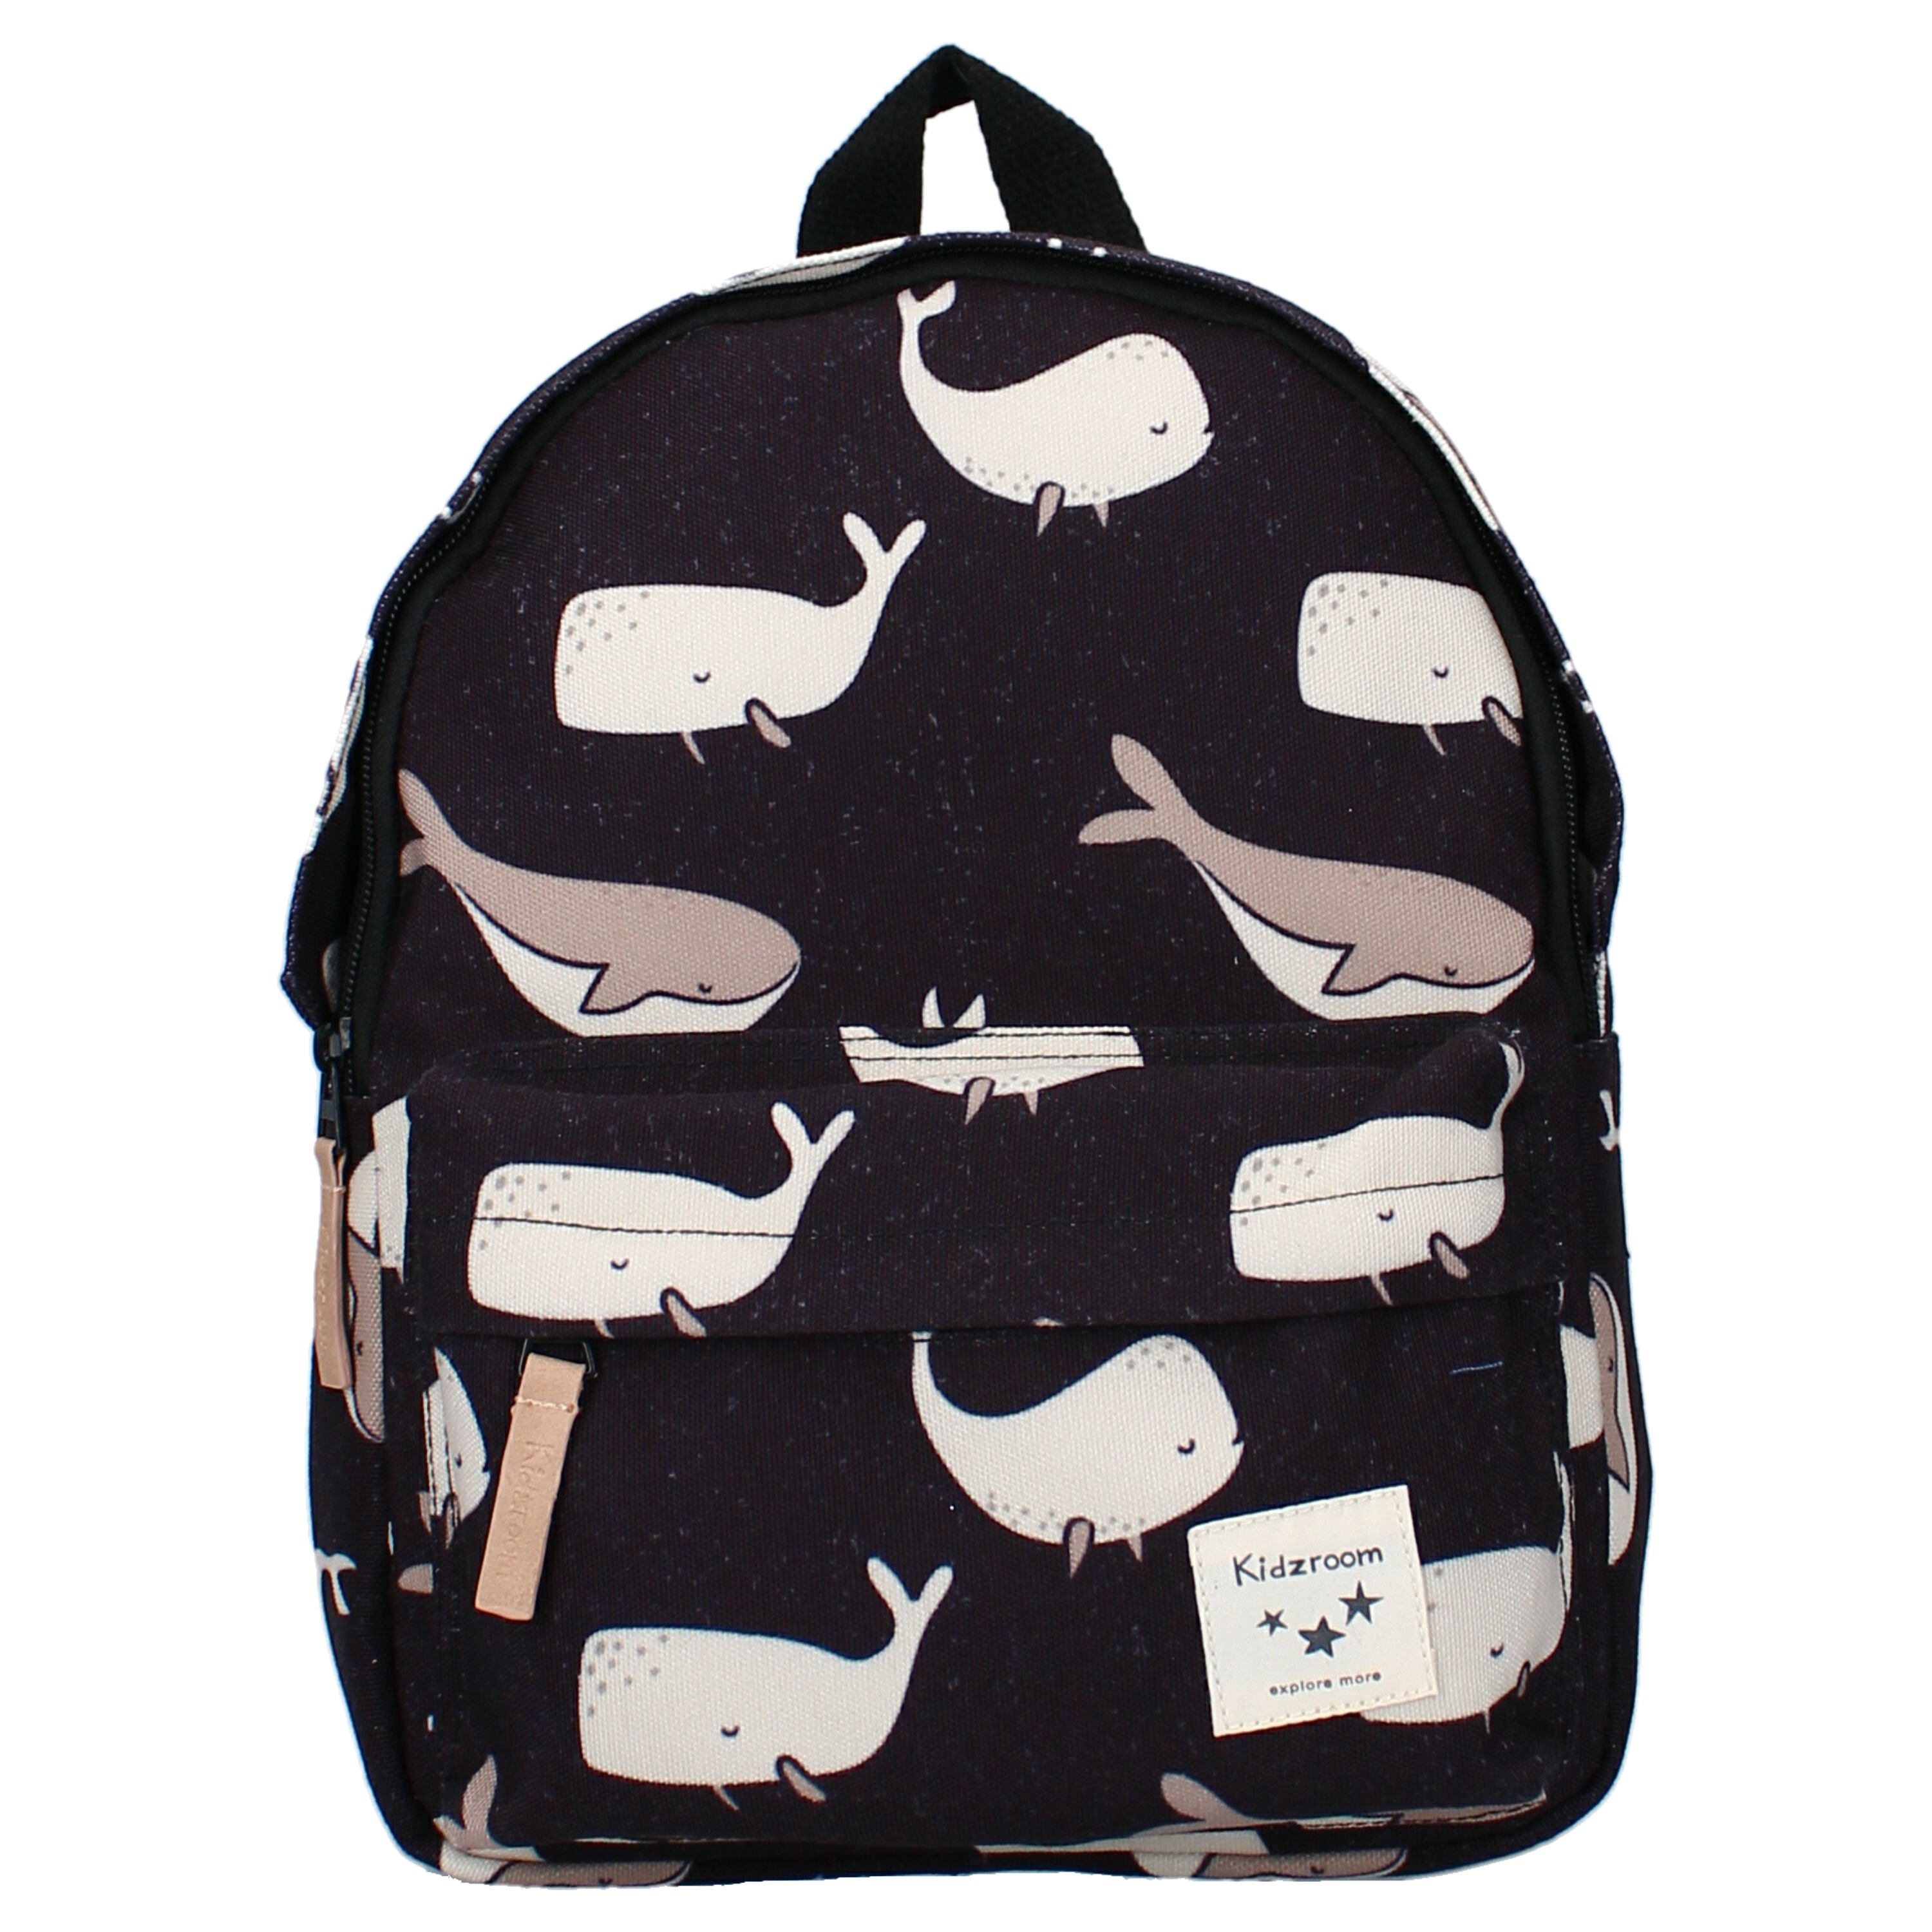 Kidzroom Backpack Full of Wonders Black